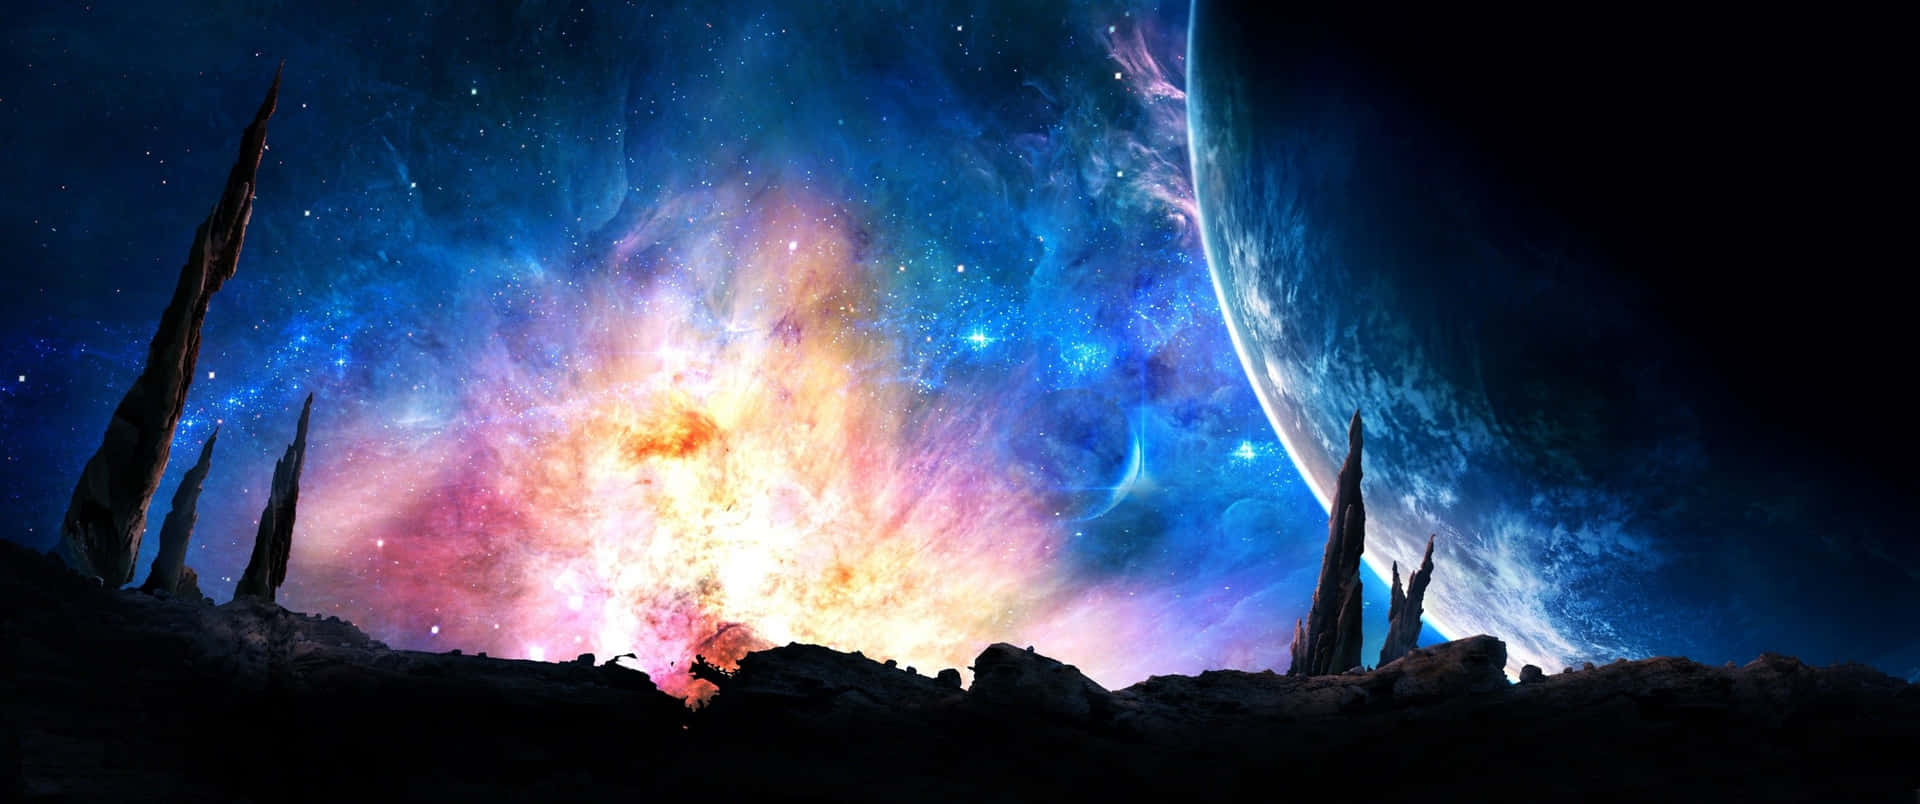 3440x1440aufsteigender Planet Im Weltraum-galaxie Wallpaper